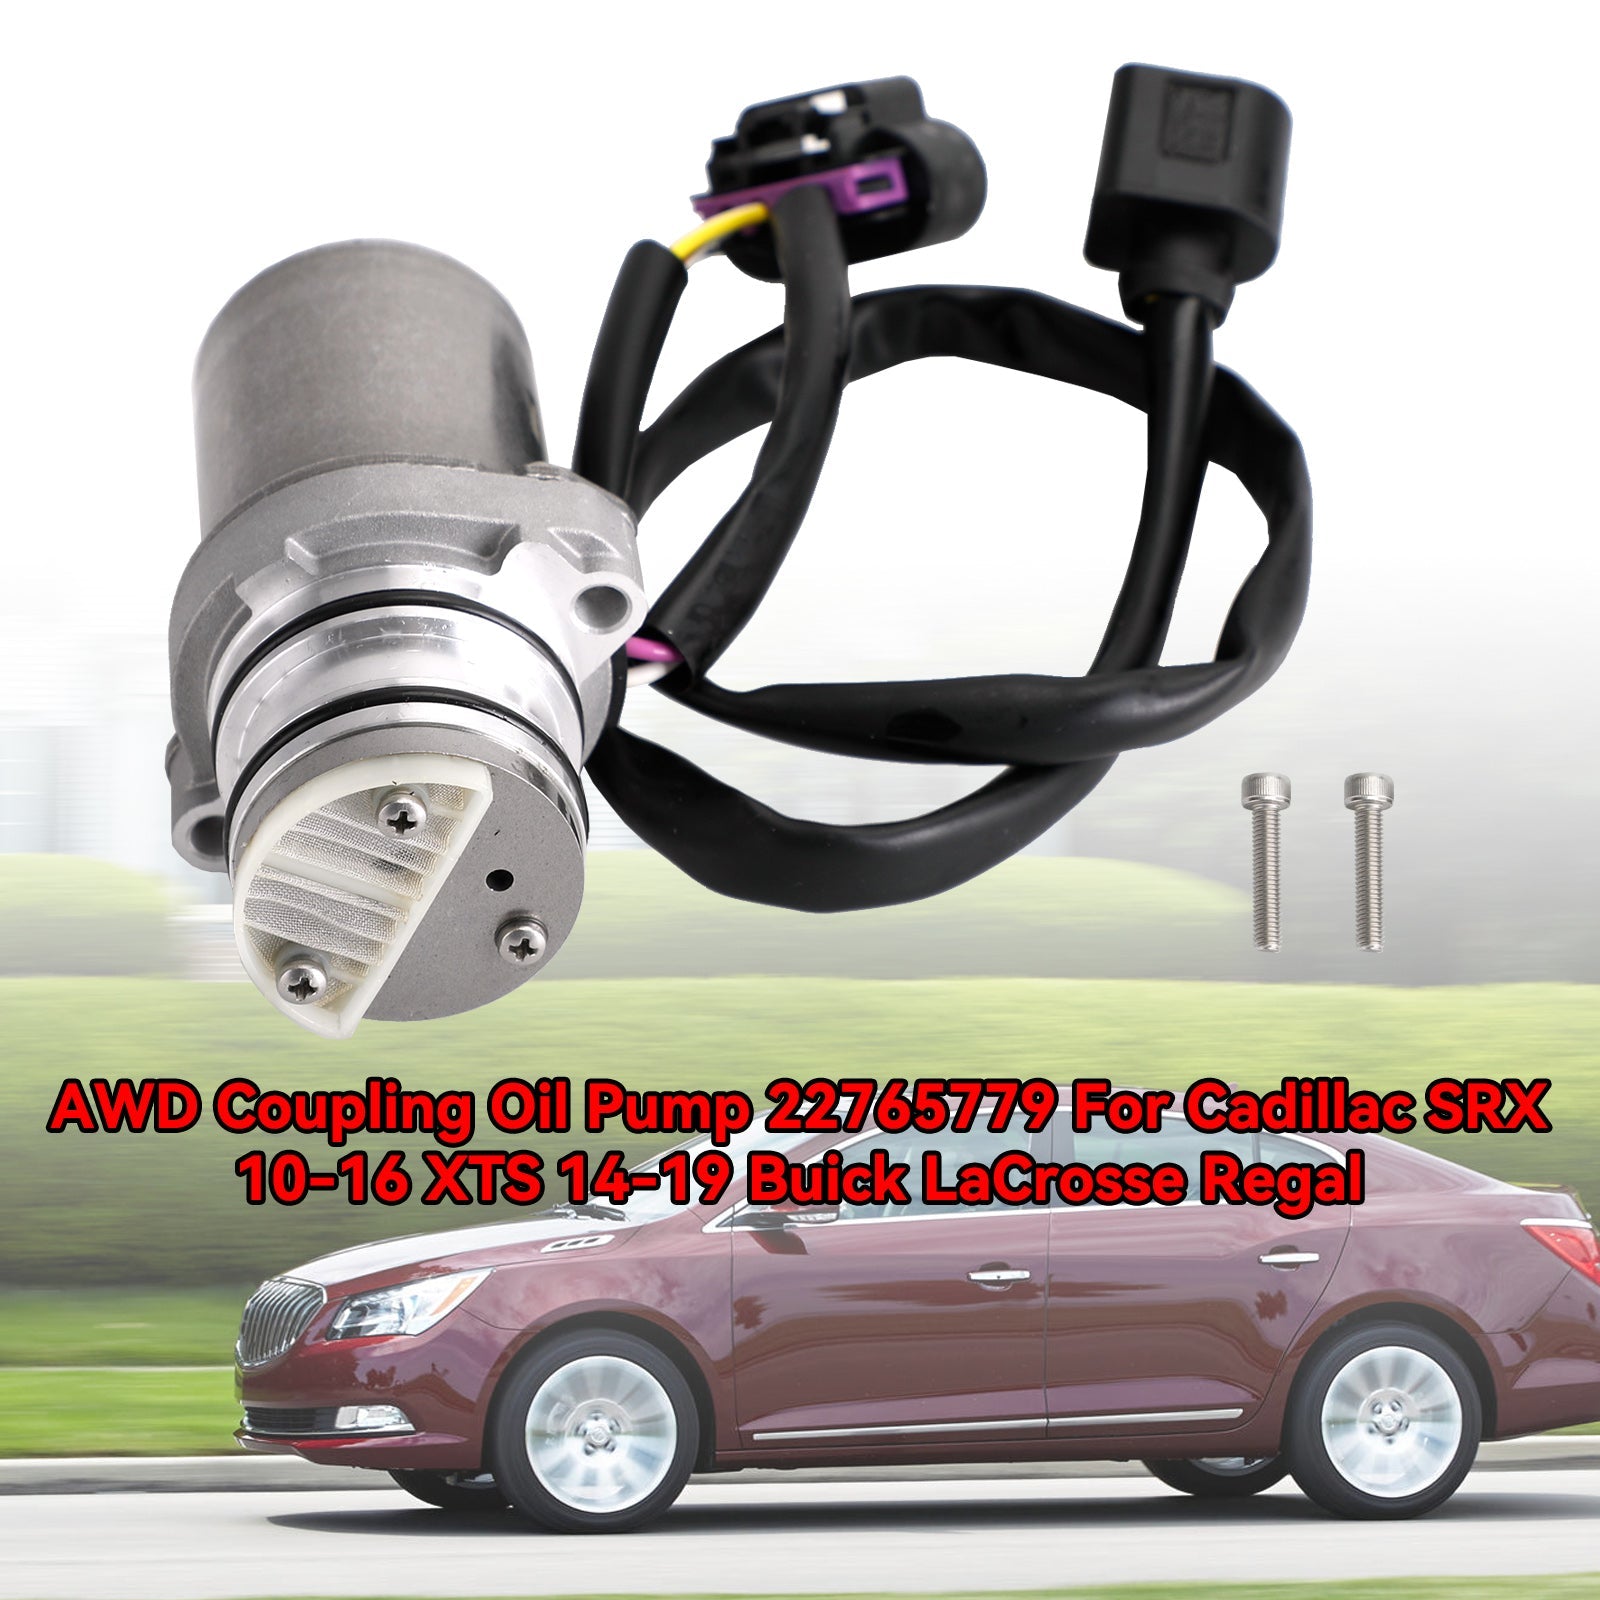 2011-2016 AWD Buick LaCrosse V6 3.6L Accoppiamento pompa olio 22765779 404029 13285796 699000